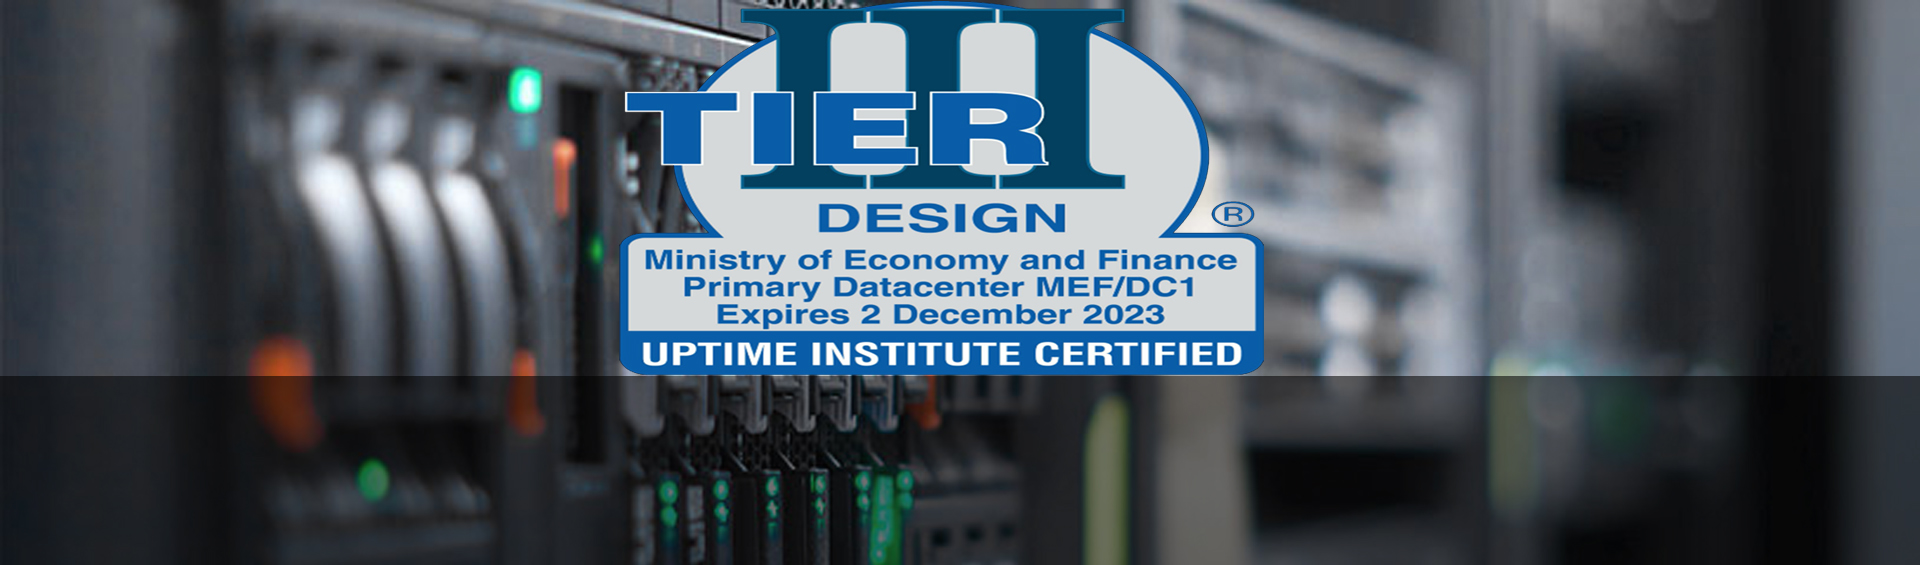 <span dir="rtl">مركز بيانات وزارة الاقتصاد والمالية يحصل على شهادة الدرجة الثالثة “TierIII” من معهد “Uptime Institute </span>